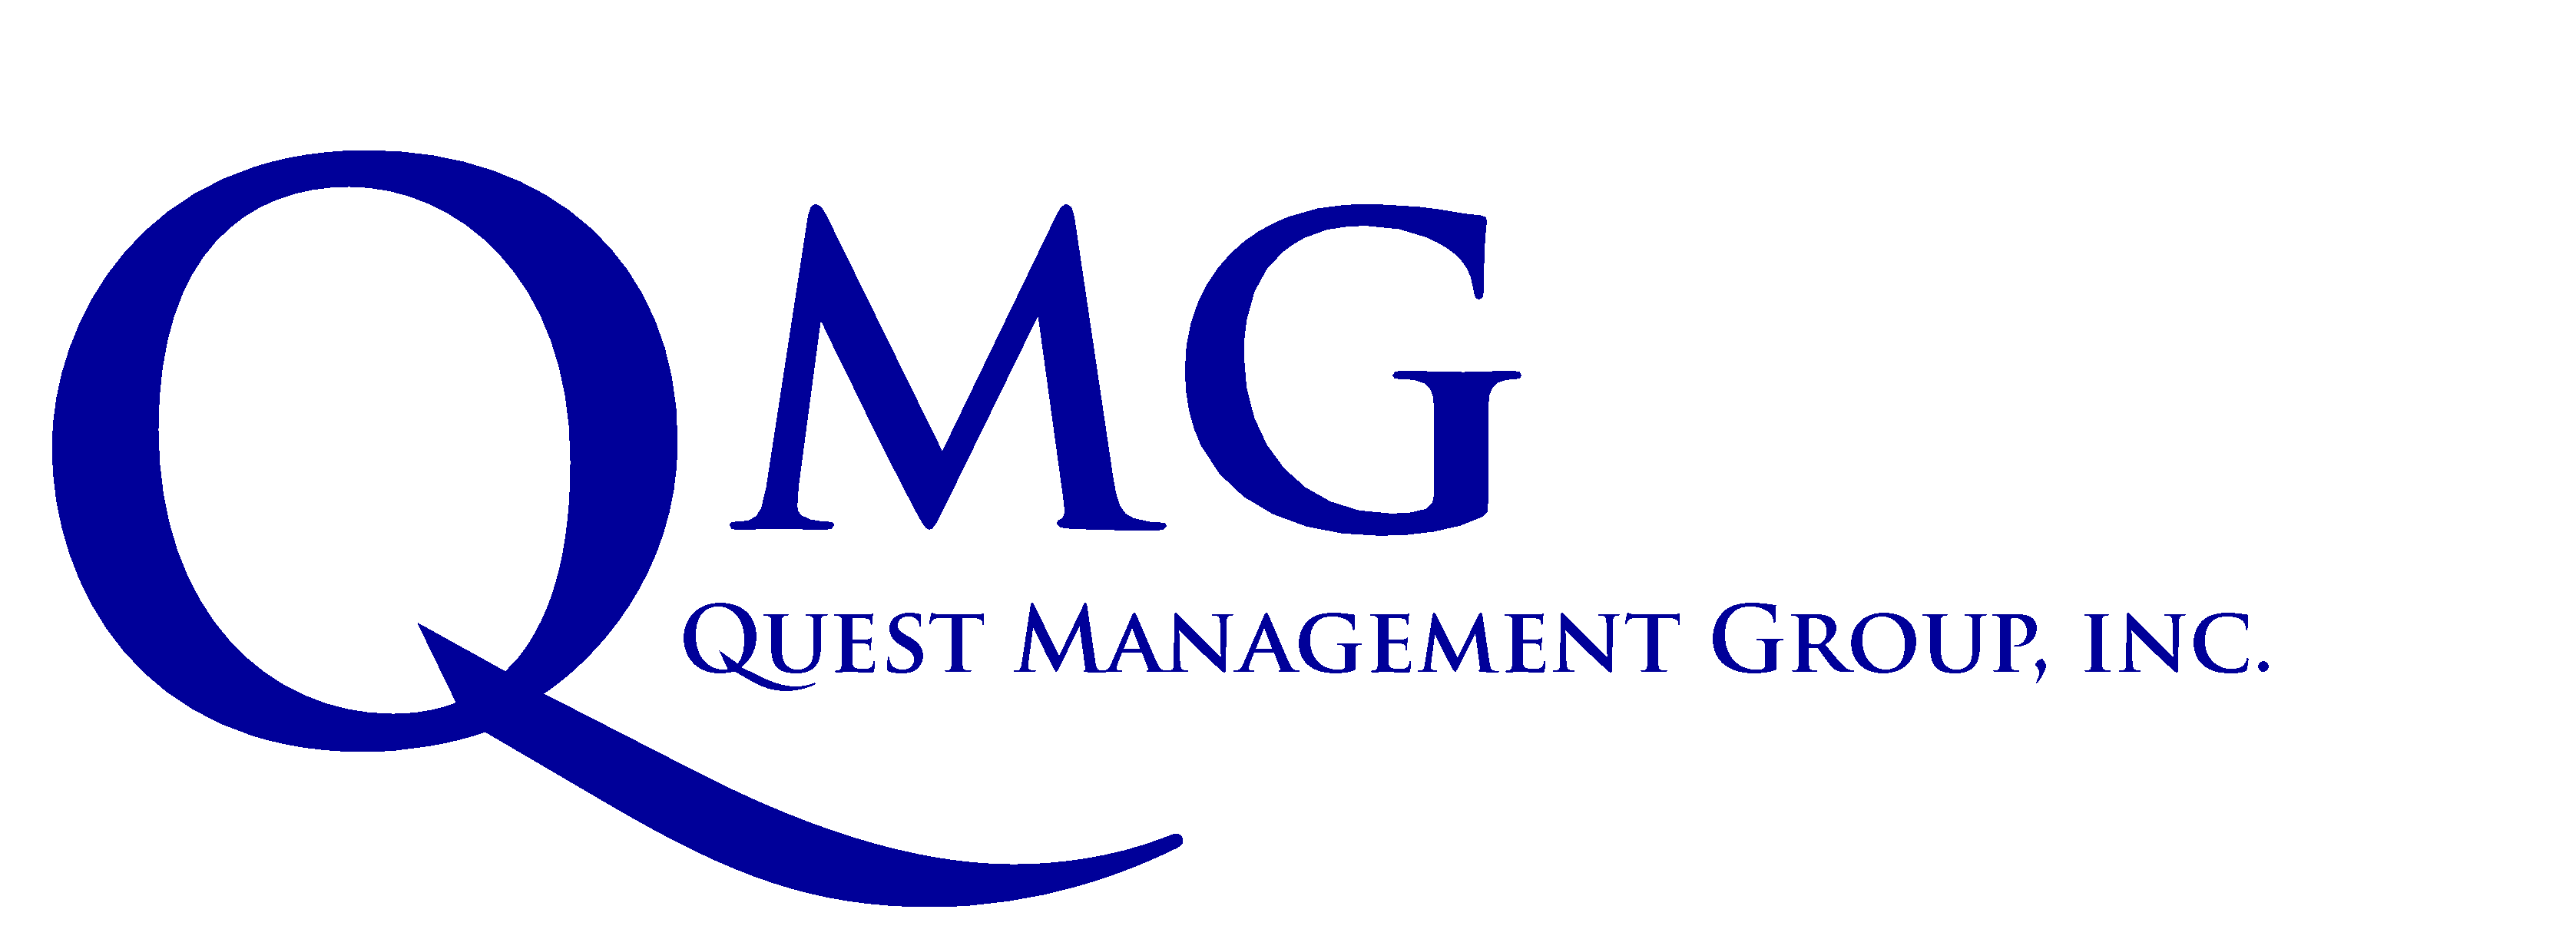 Quest Management Group logo